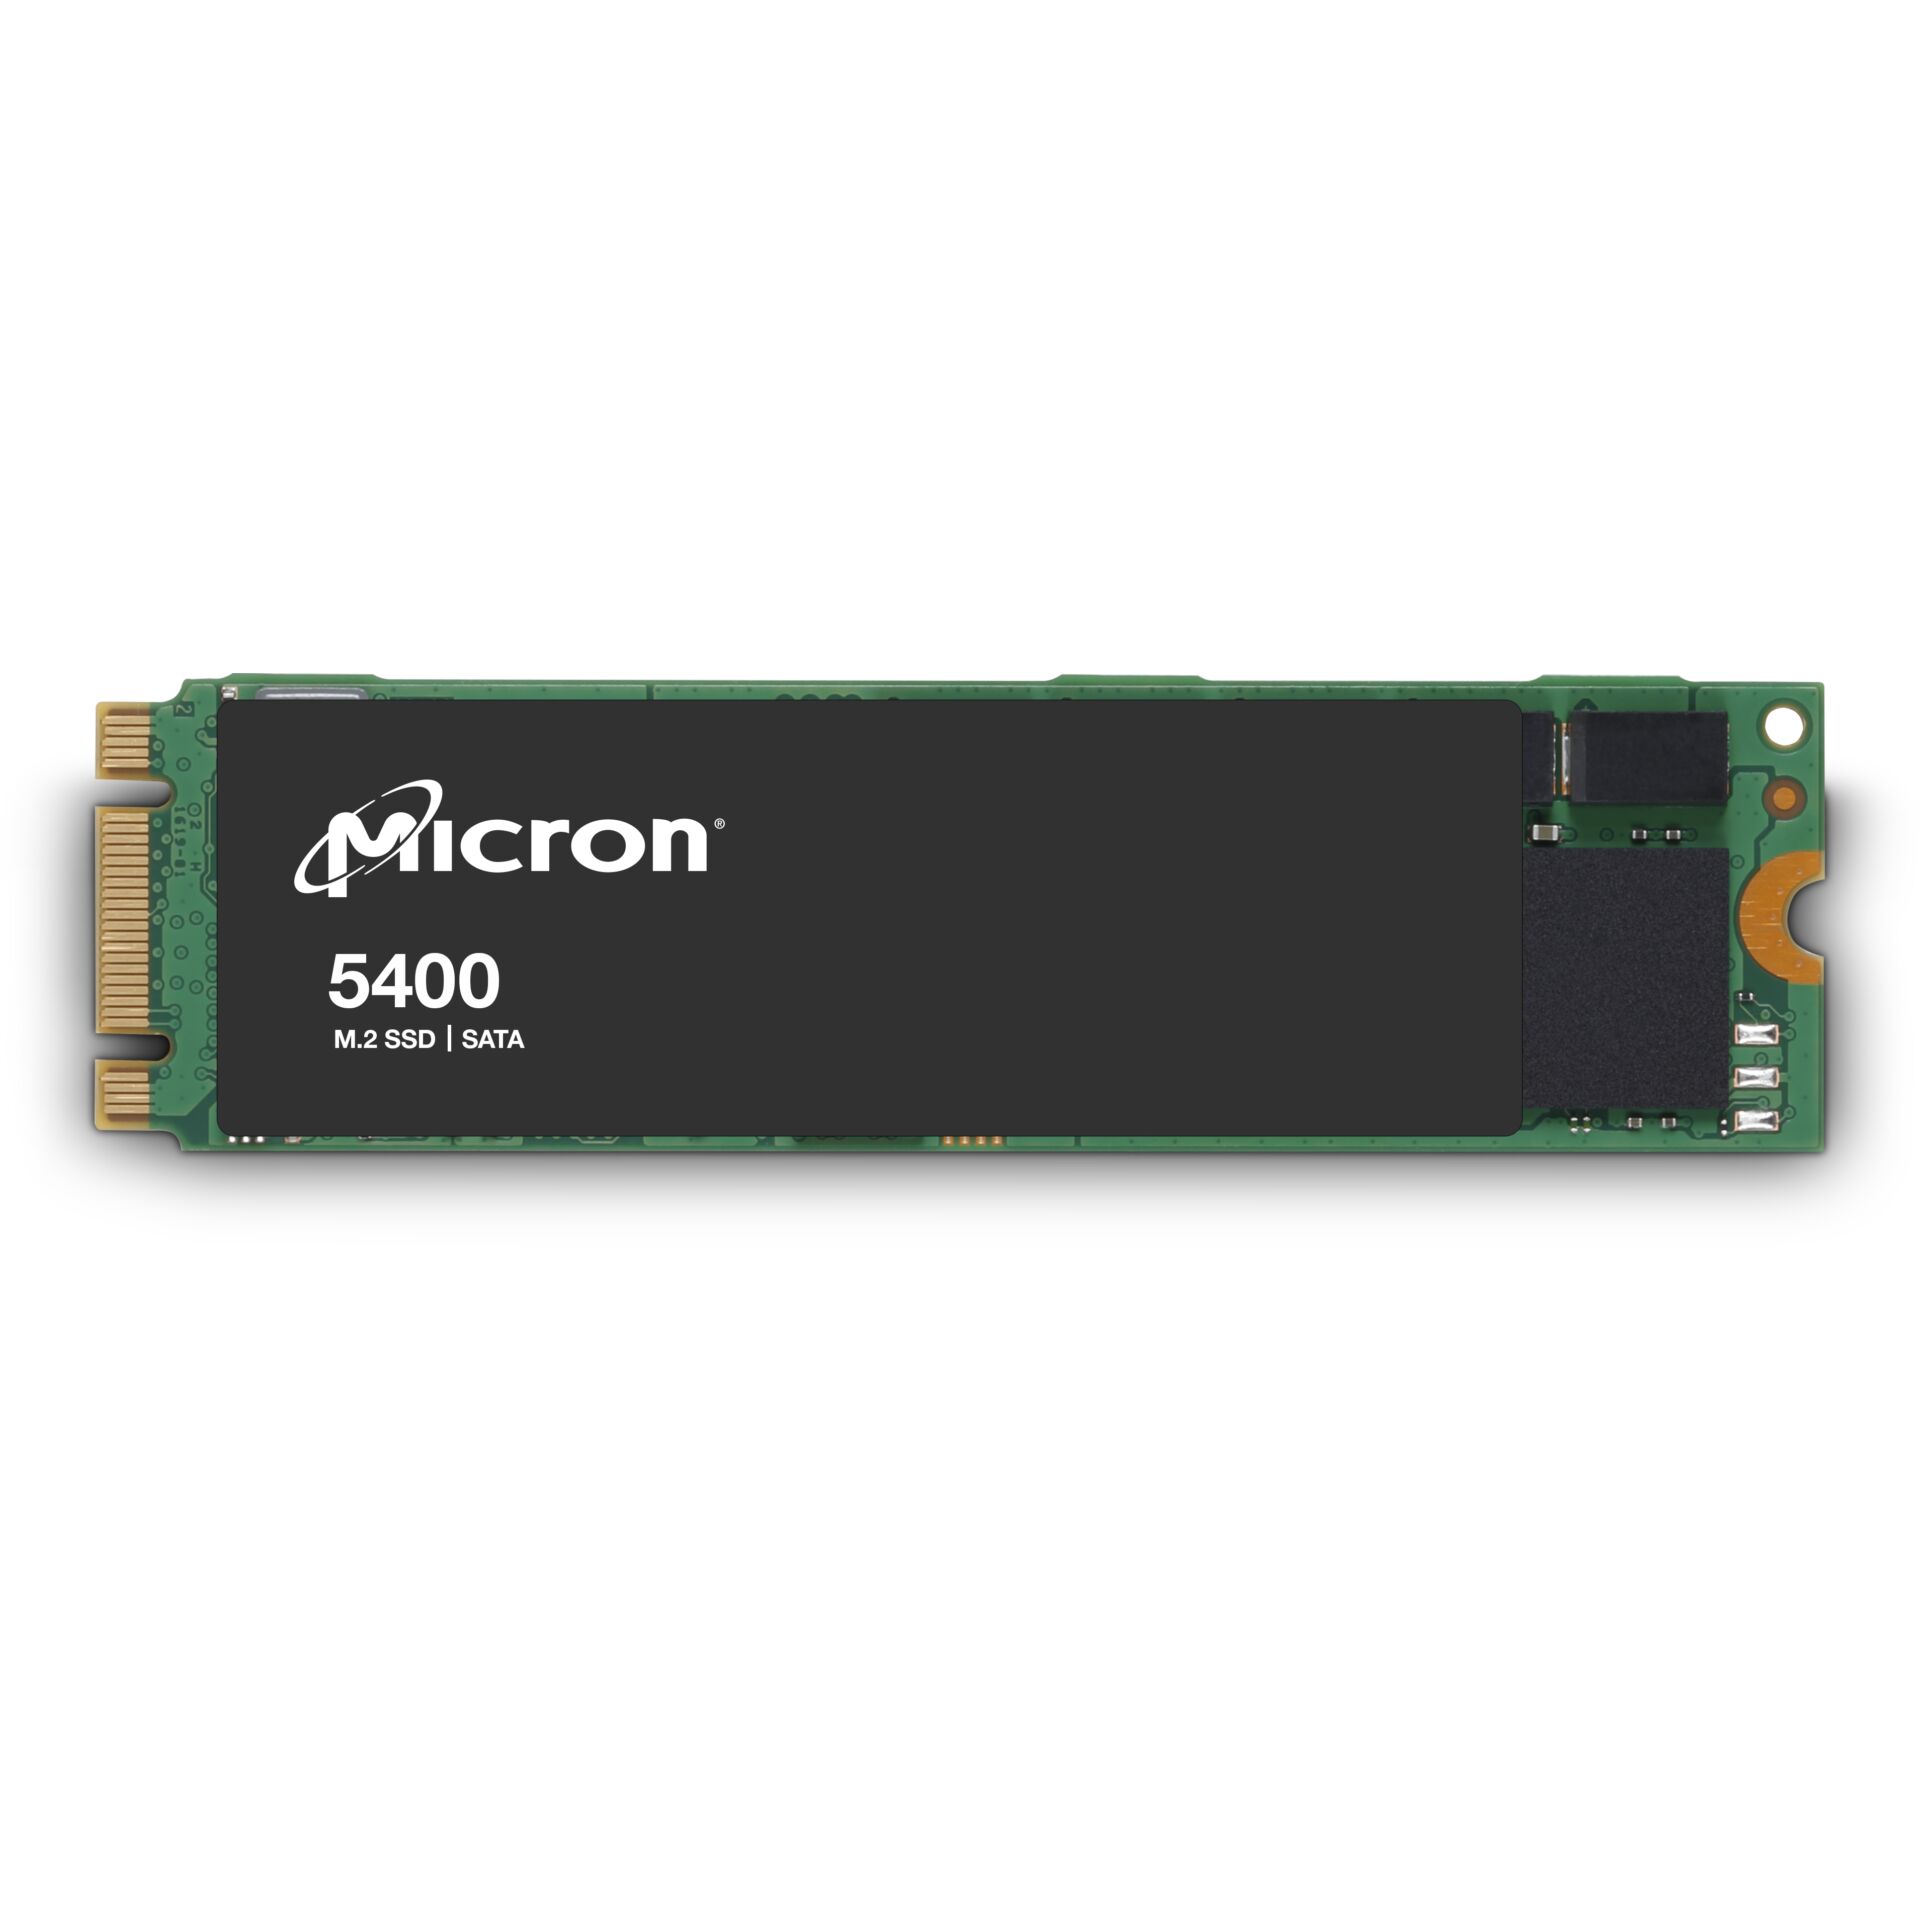 Micron 5400 BOOT 240GB SATA M.2